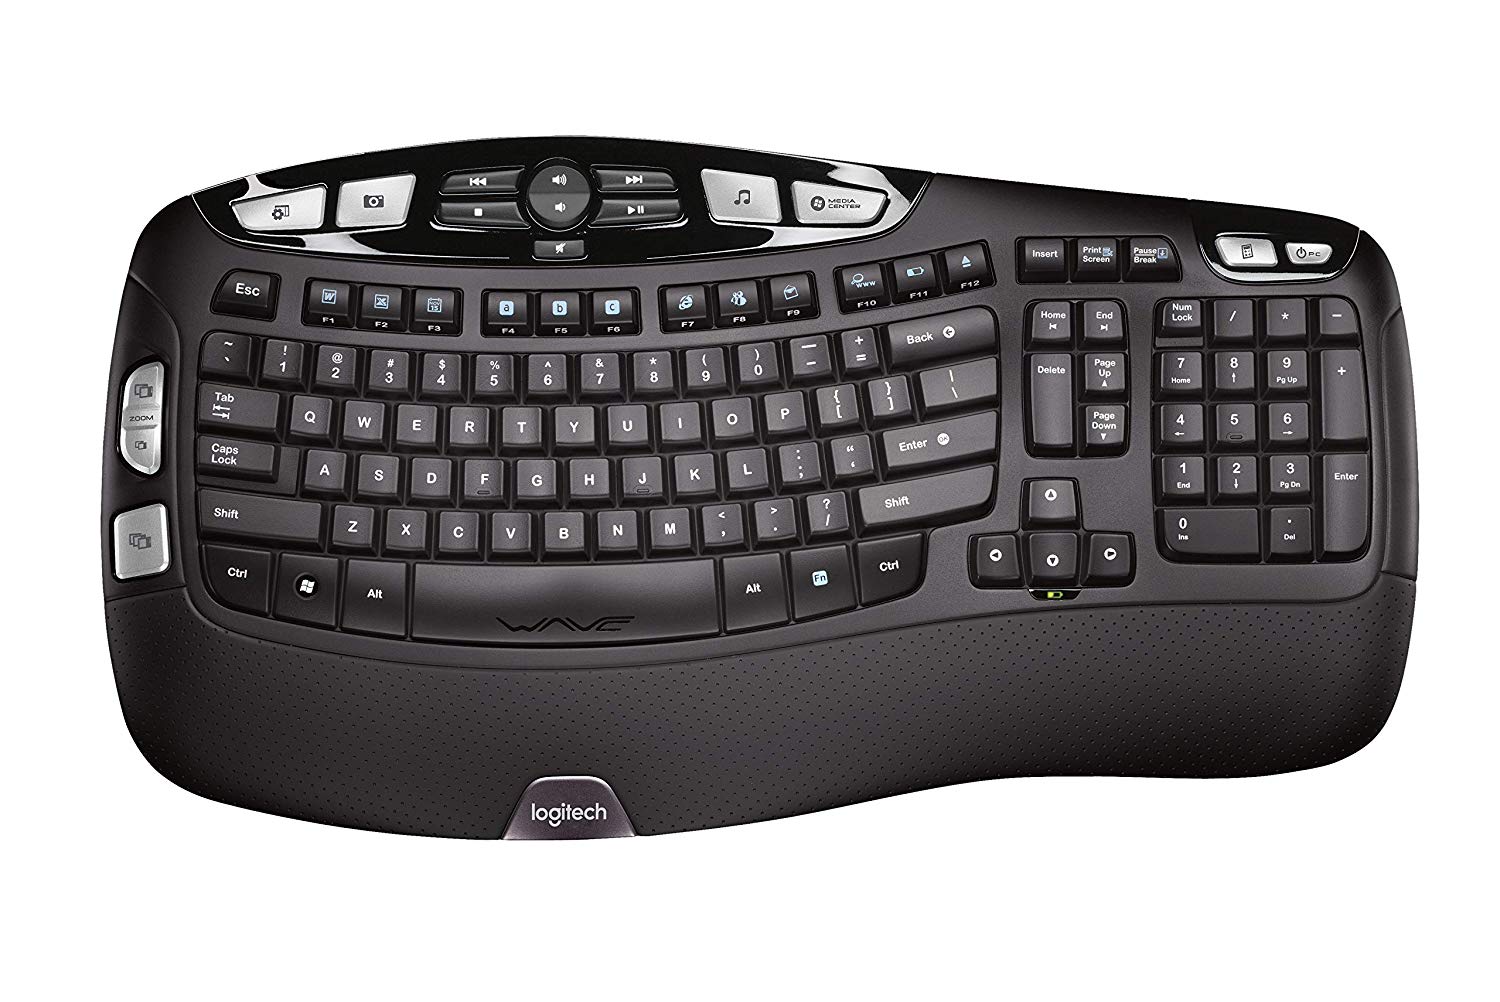 The Logitech K350 keyboard.